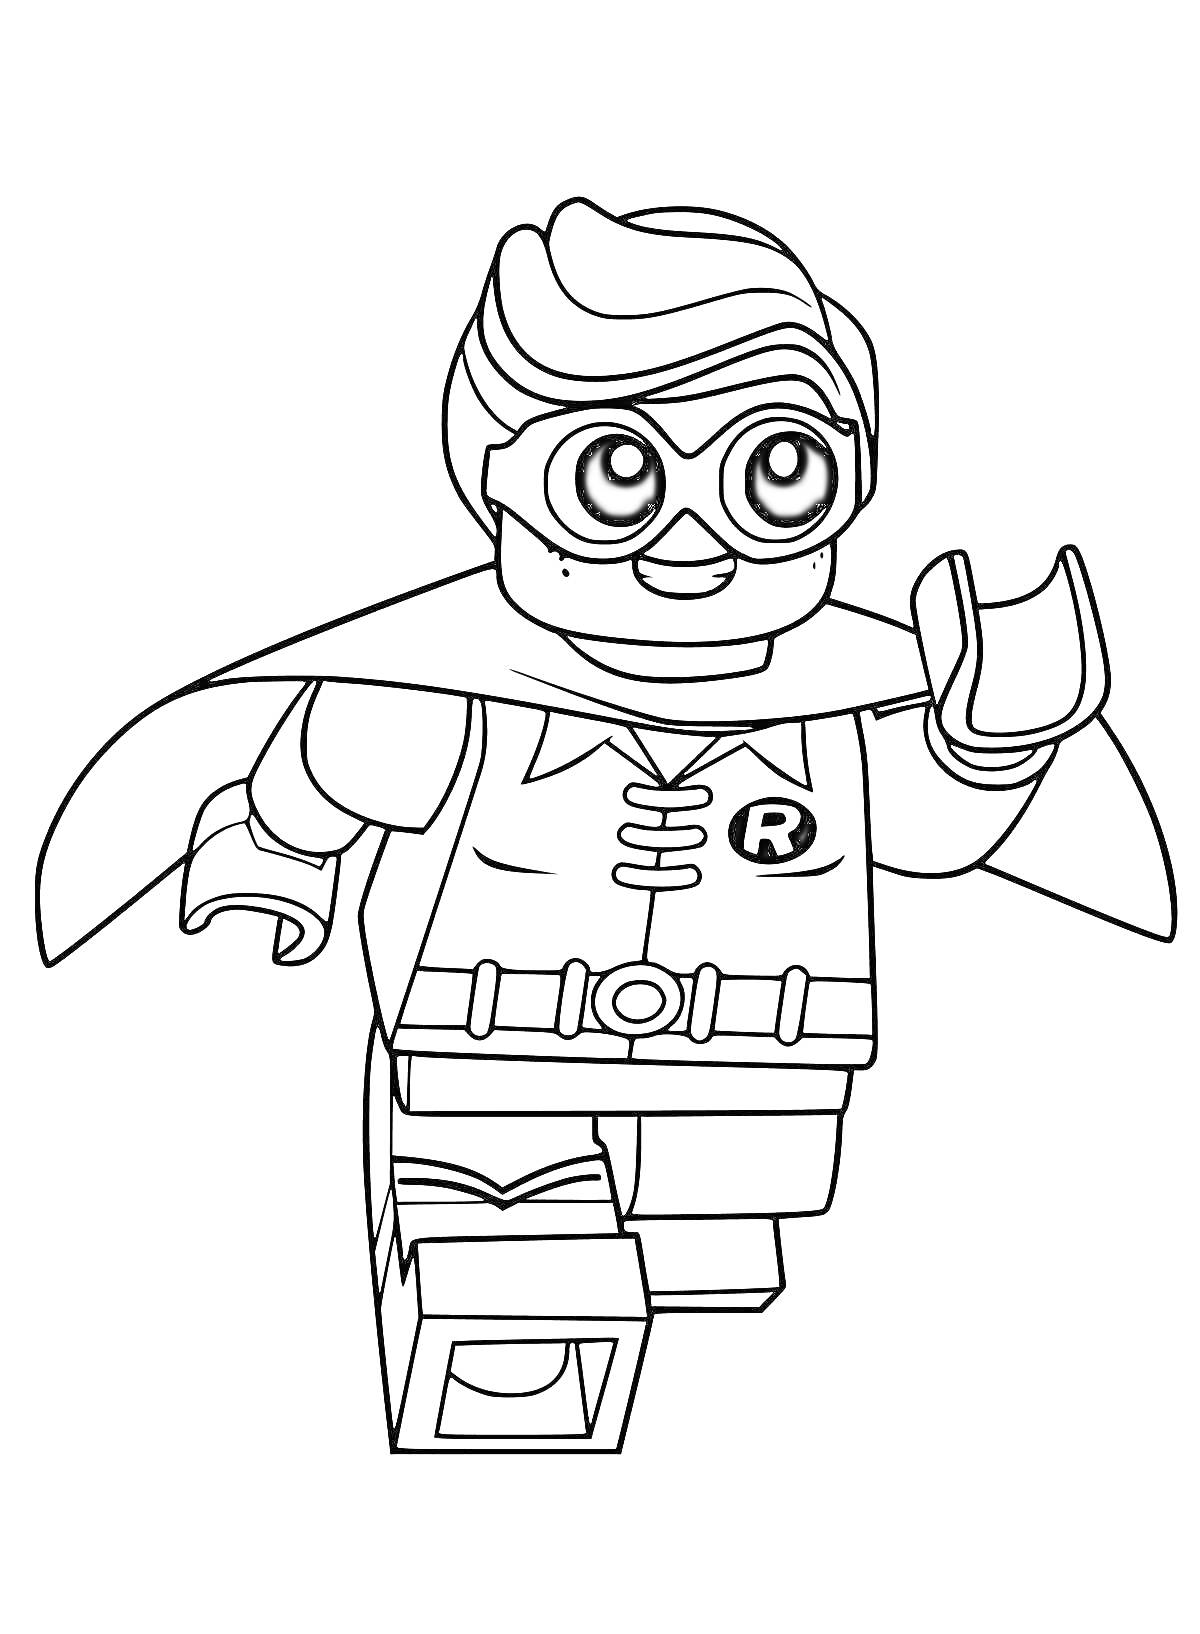 Лего персонаж в героическом костюме с буквой 